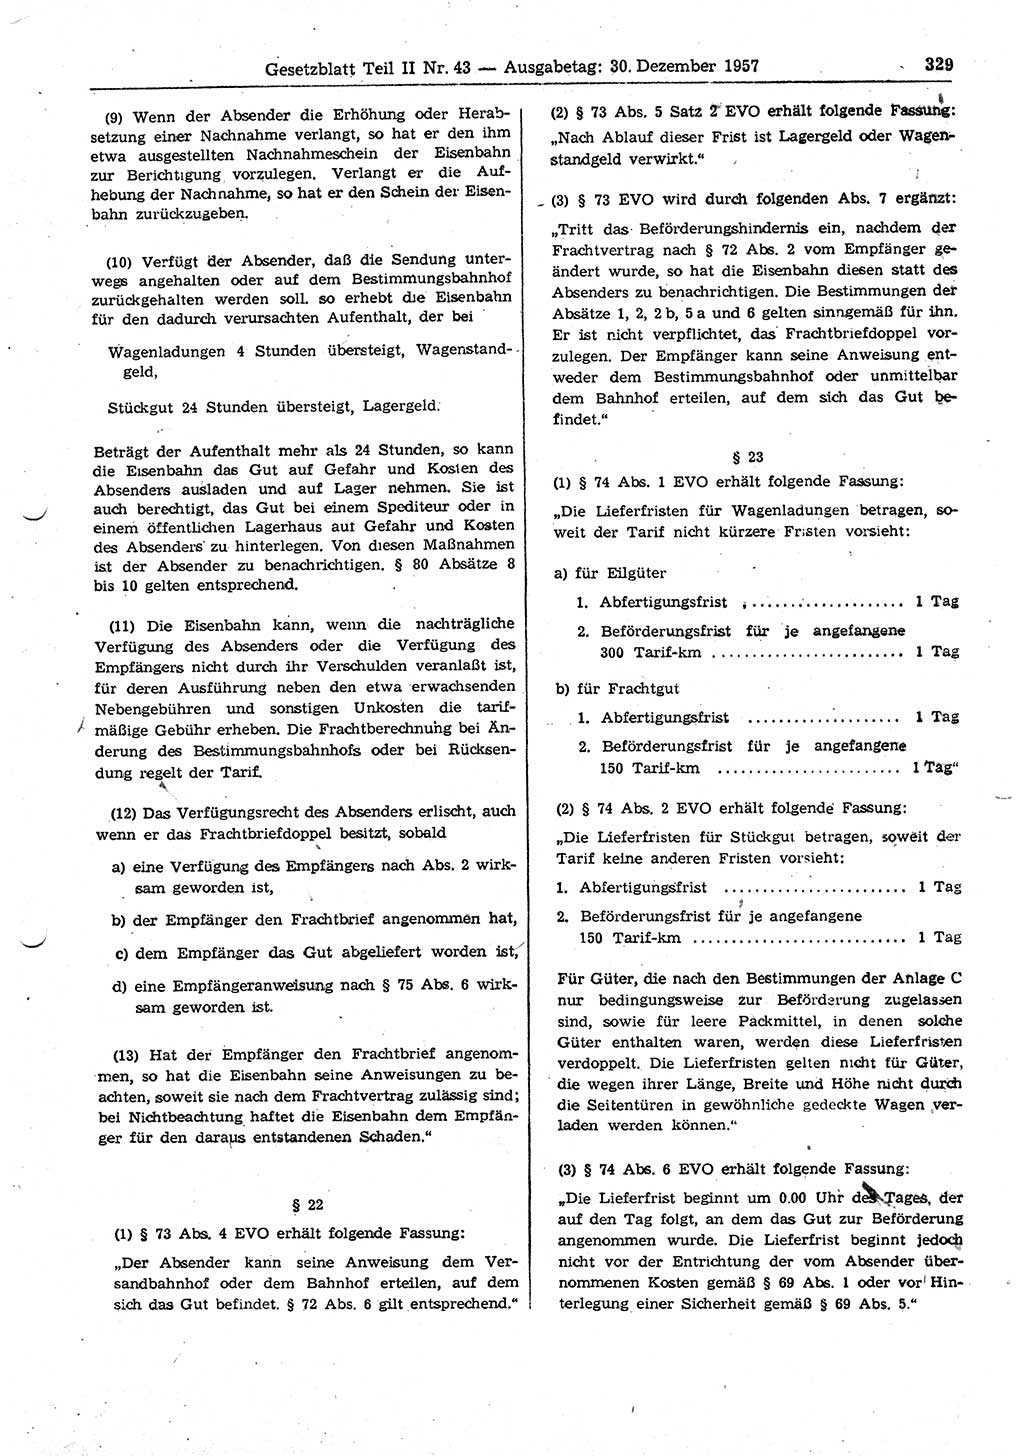 Gesetzblatt (GBl.) der Deutschen Demokratischen Republik (DDR) Teil ⅠⅠ 1957, Seite 329 (GBl. DDR ⅠⅠ 1957, S. 329)